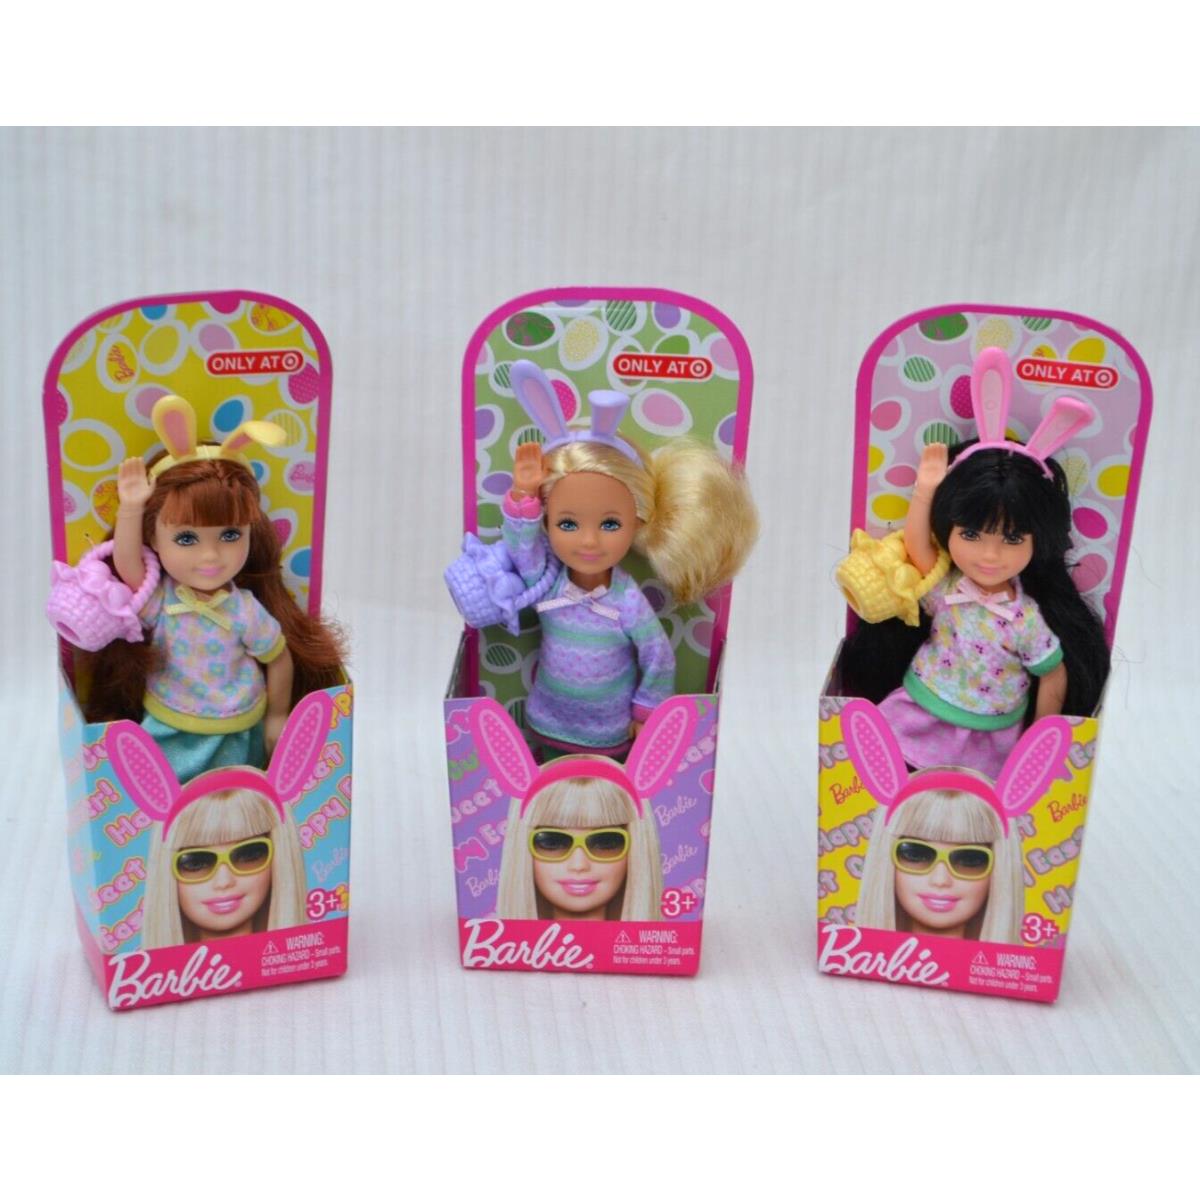 Happy Easter Sweet Cute Kelly Chelsie Chelsea Set of 3 Dolls 2010 Target